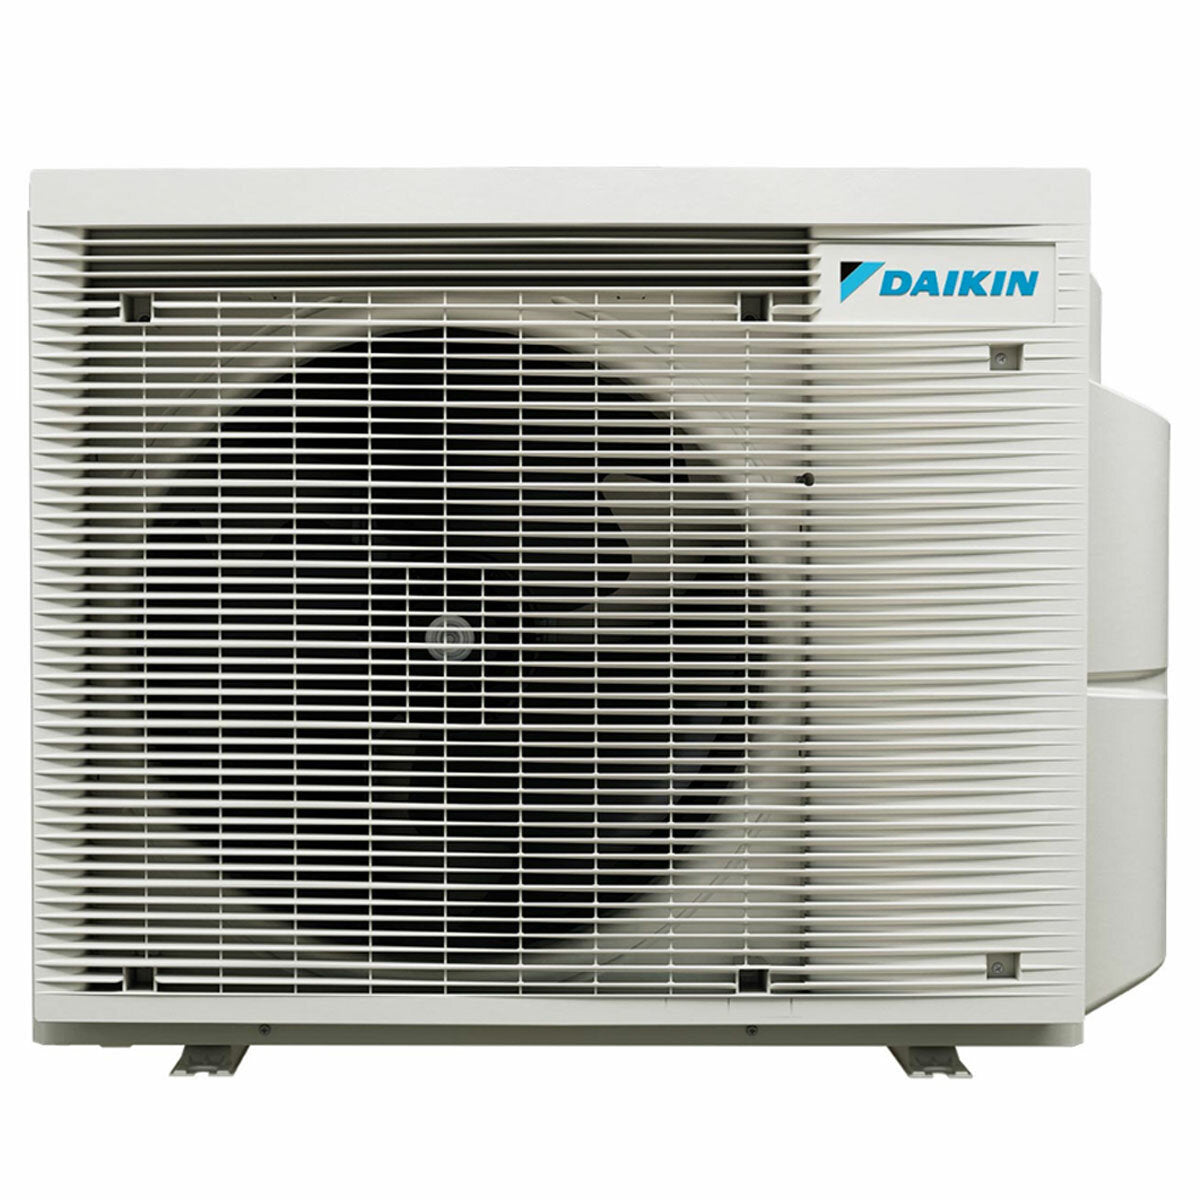 Daikin Emura 3 trial split air conditioner 7000+7000+15000 BTU inverter A+ wifi outdoor unit 6.8 kW Silver